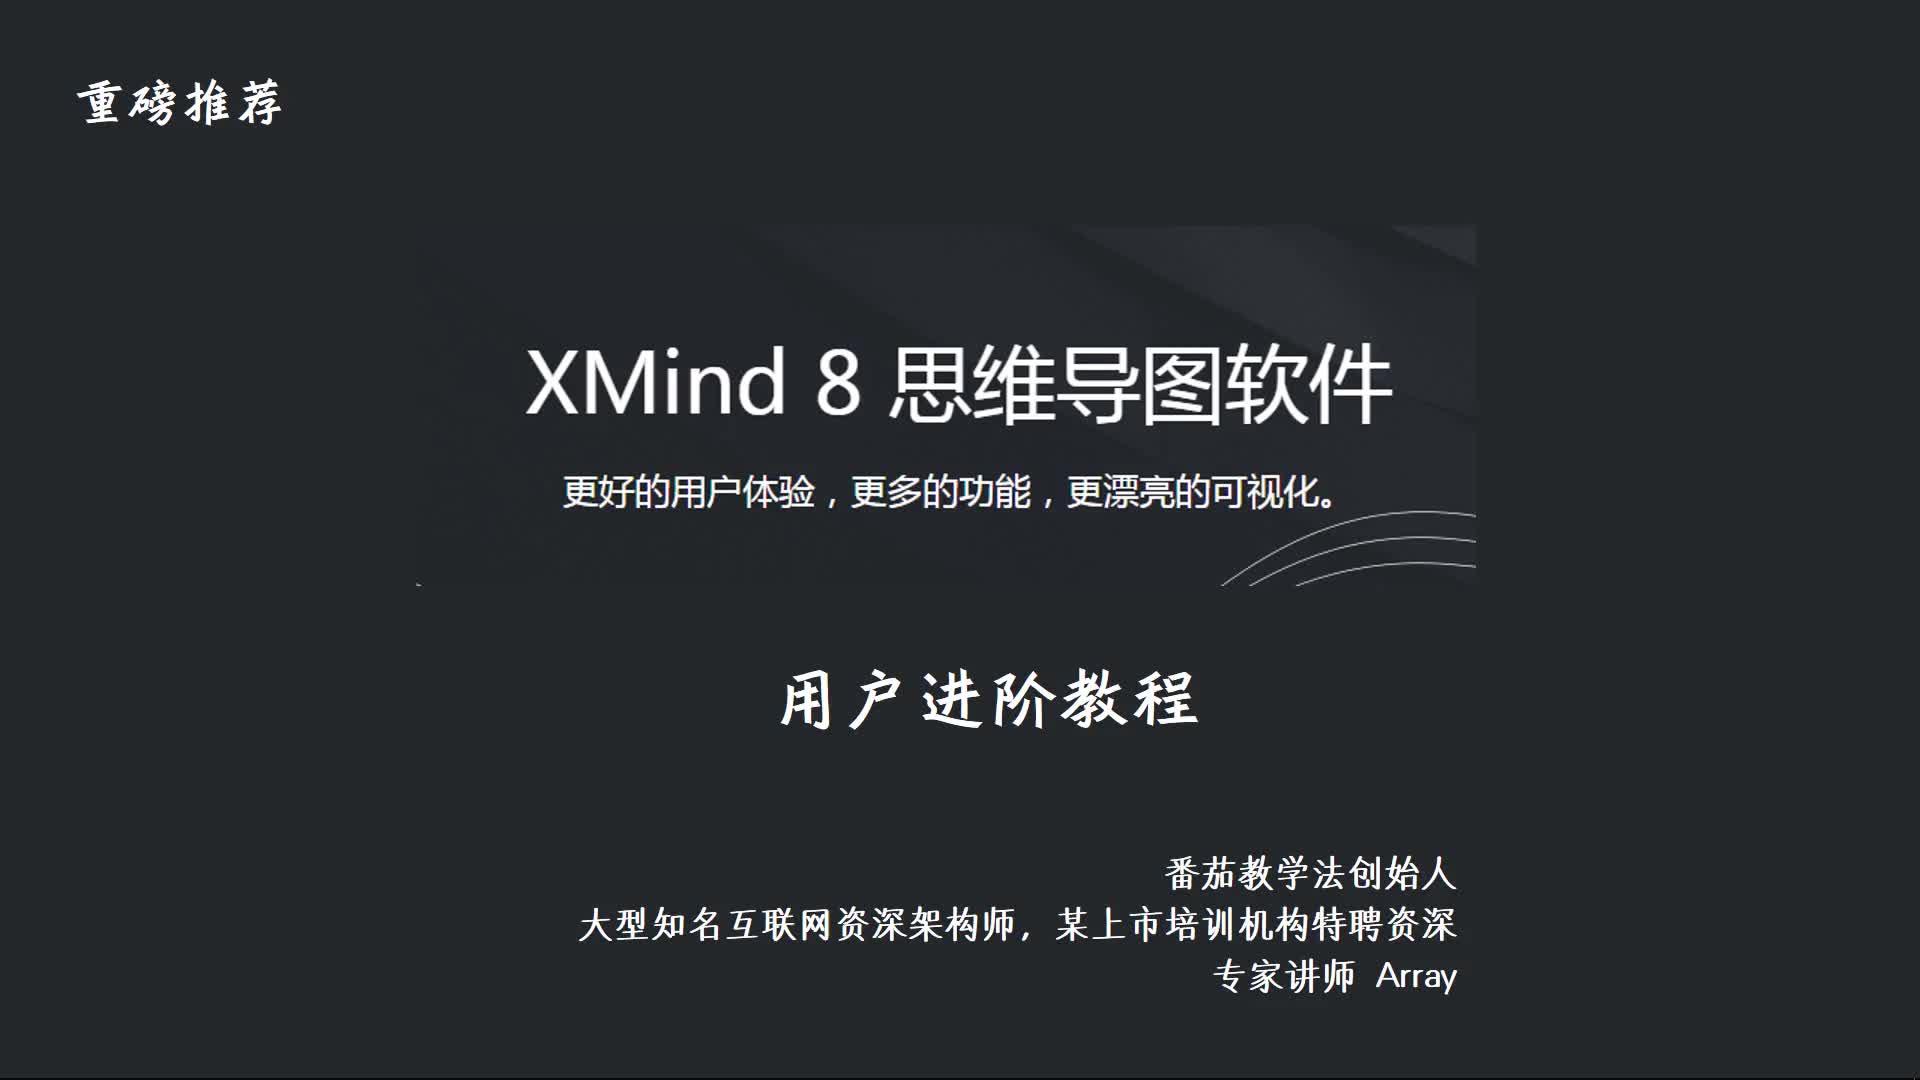 xmind8 pro 进阶班